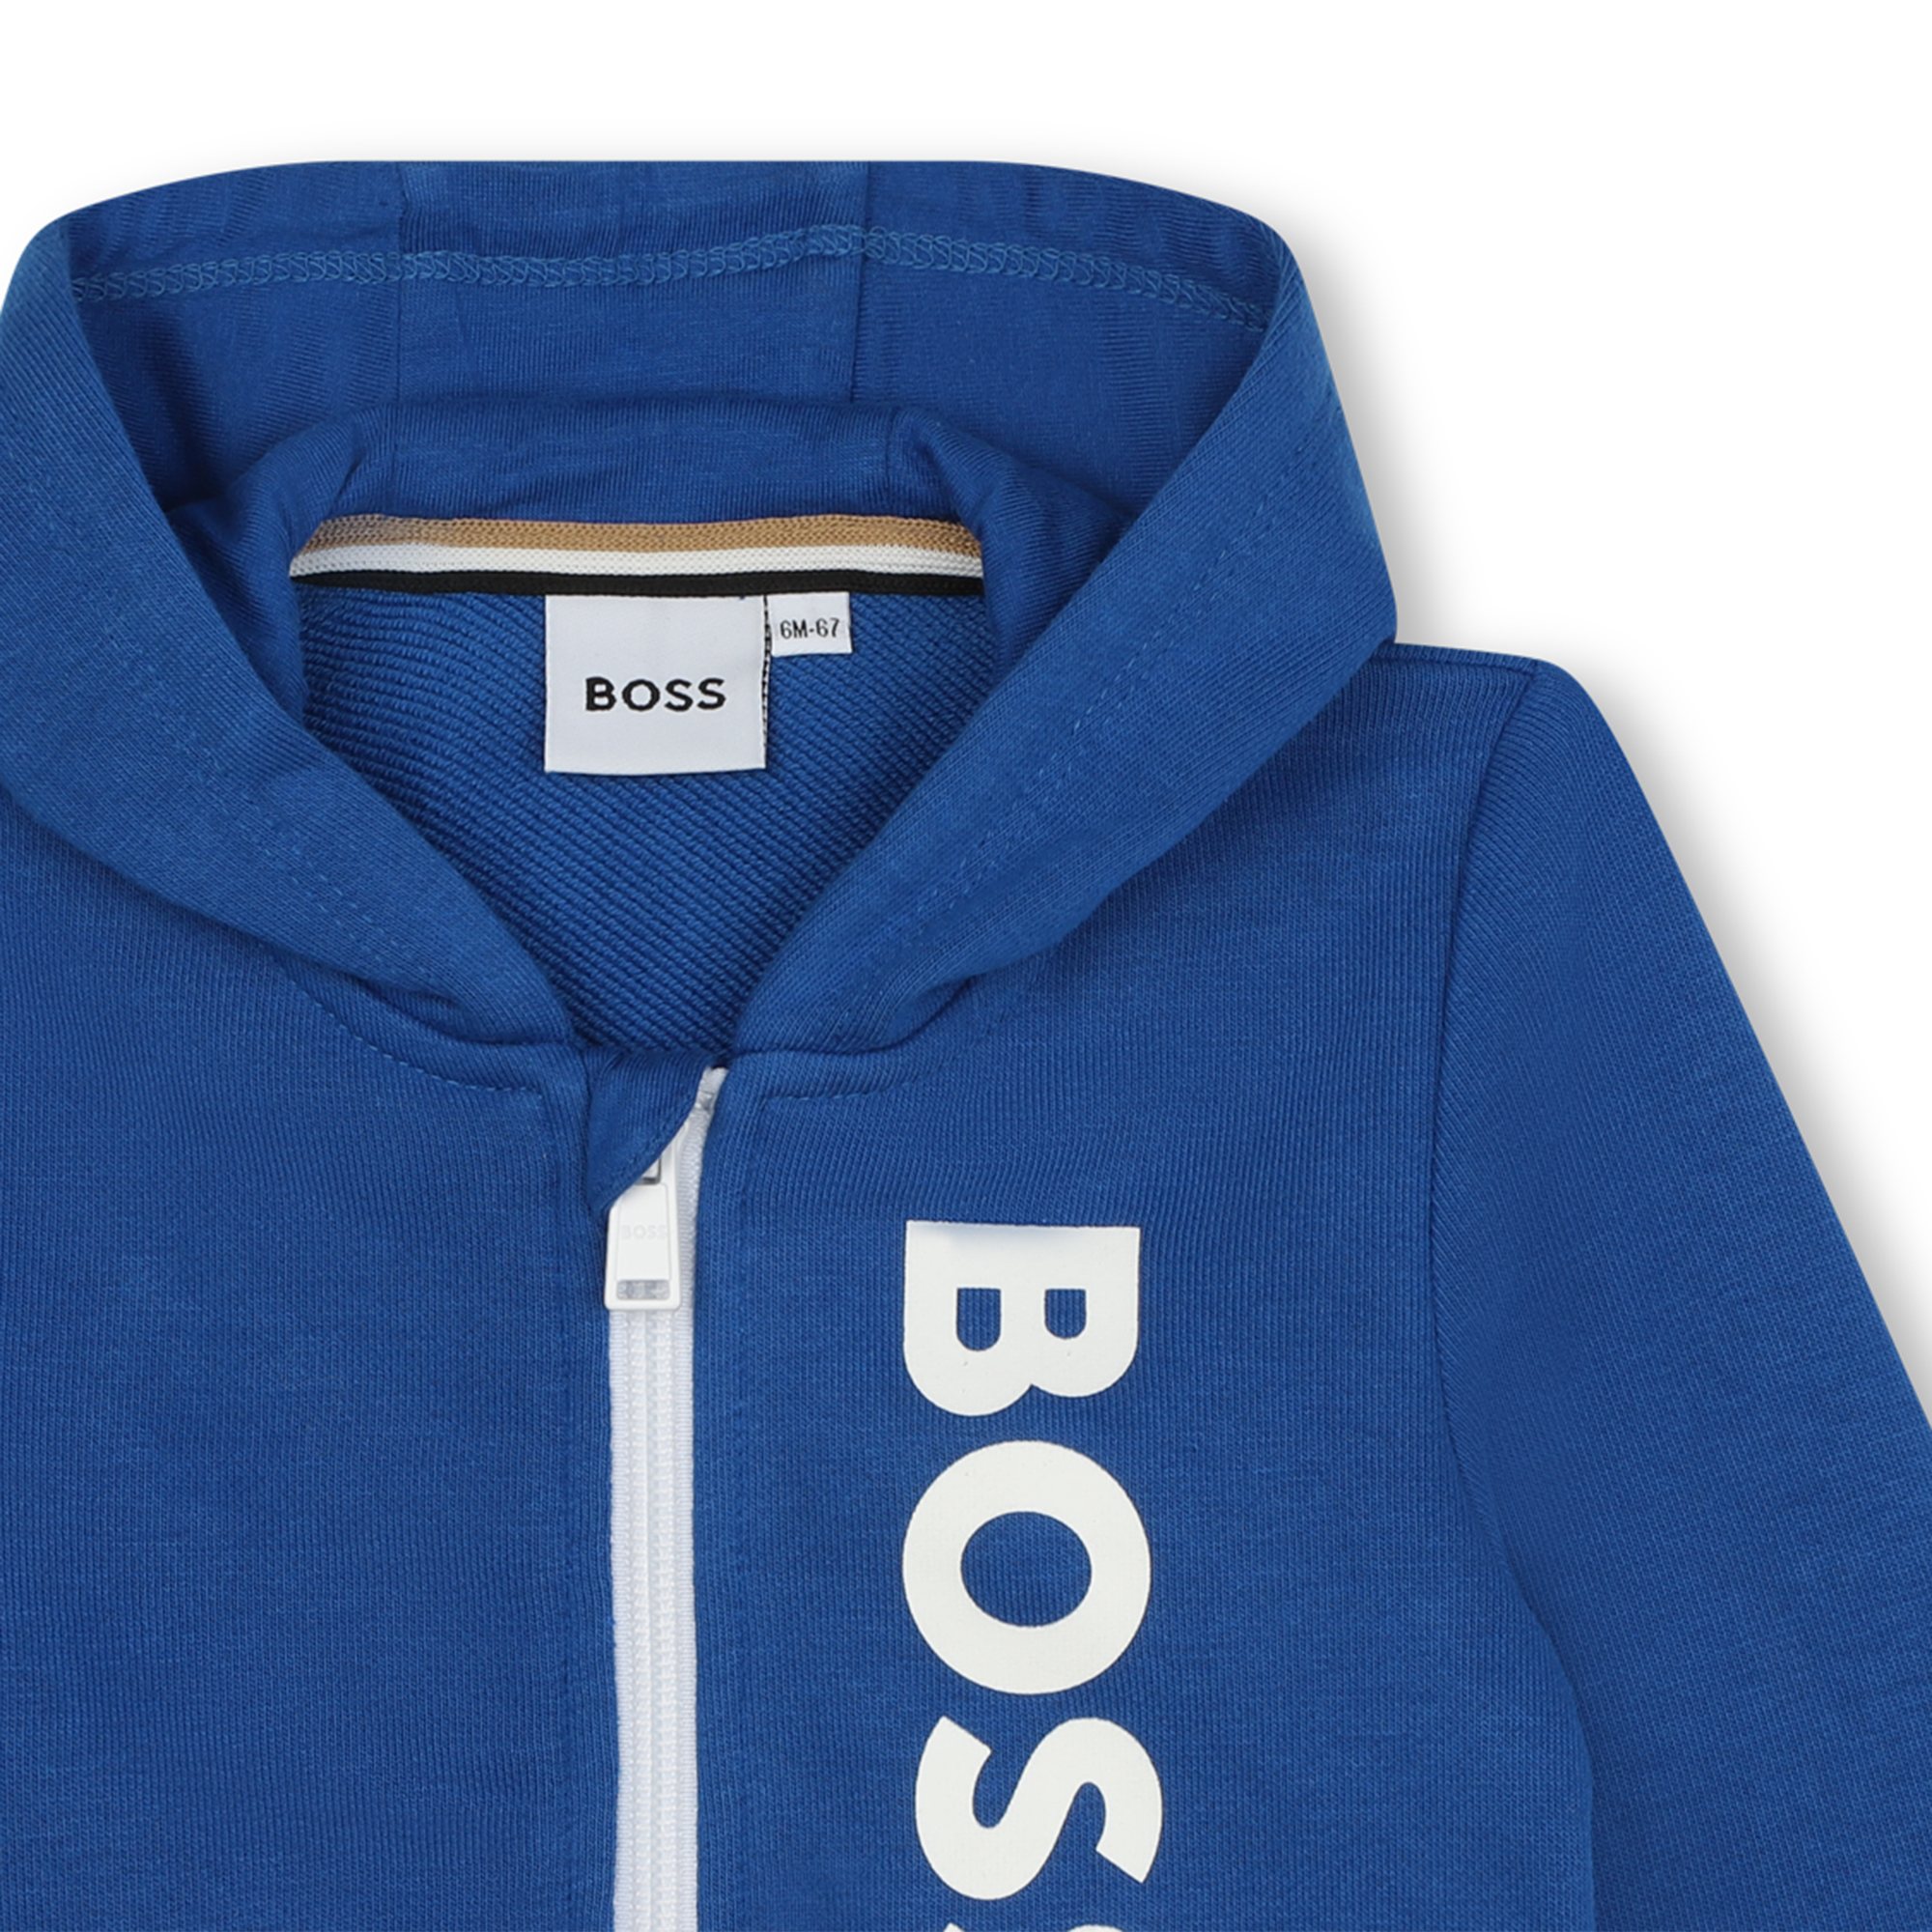 Sweater met rits en logo BOSS Voor